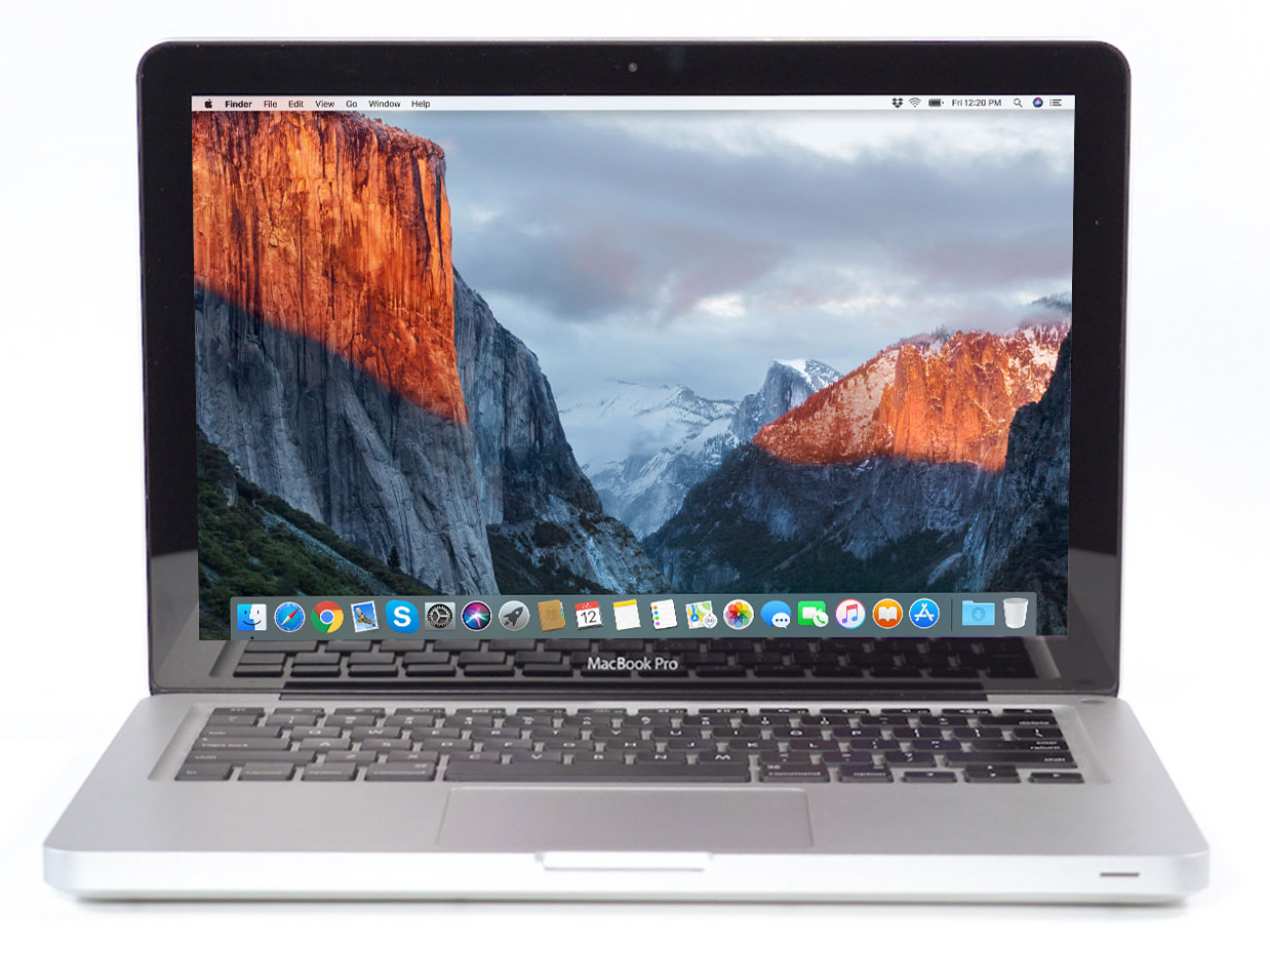 Apple MacBook Pro (15-inch Mid 2012) 2.3 GHz i7-3615QM 4GB 500GB HDD (Silver)